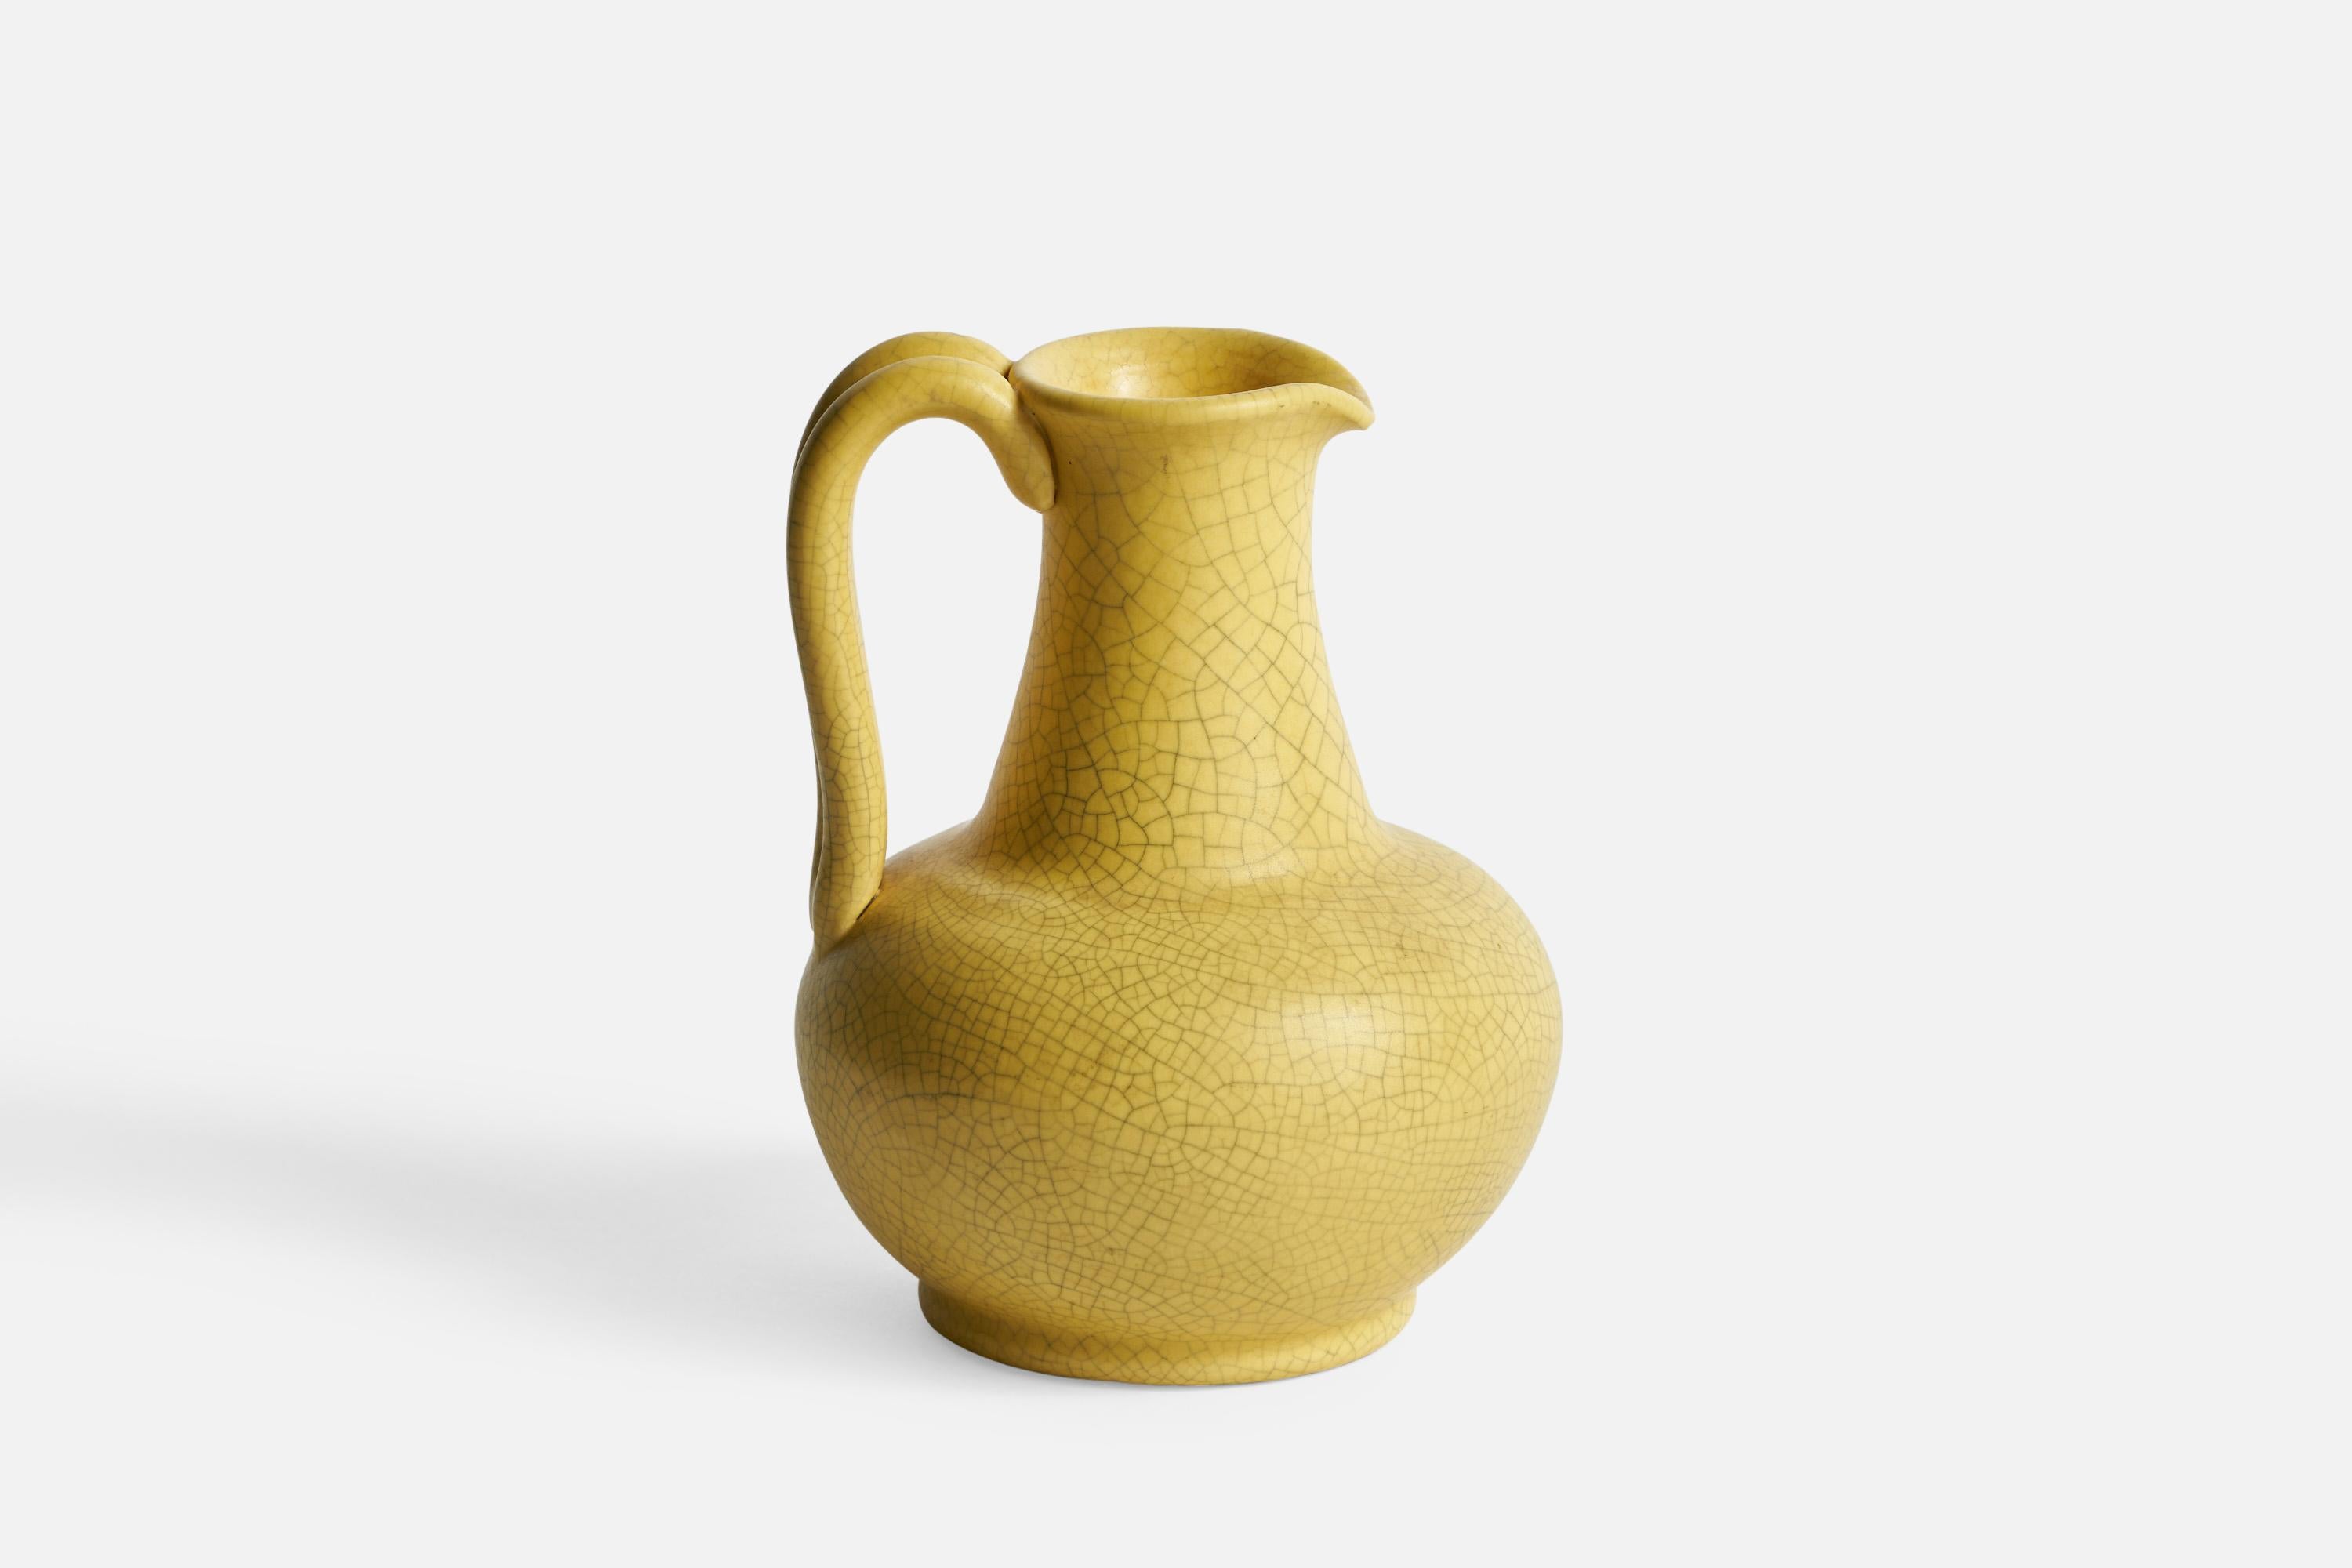 Kleiner Krug aus gelb glasierter Keramik, entworfen und hergestellt von Nittsjö, Schweden, 1930er Jahre.